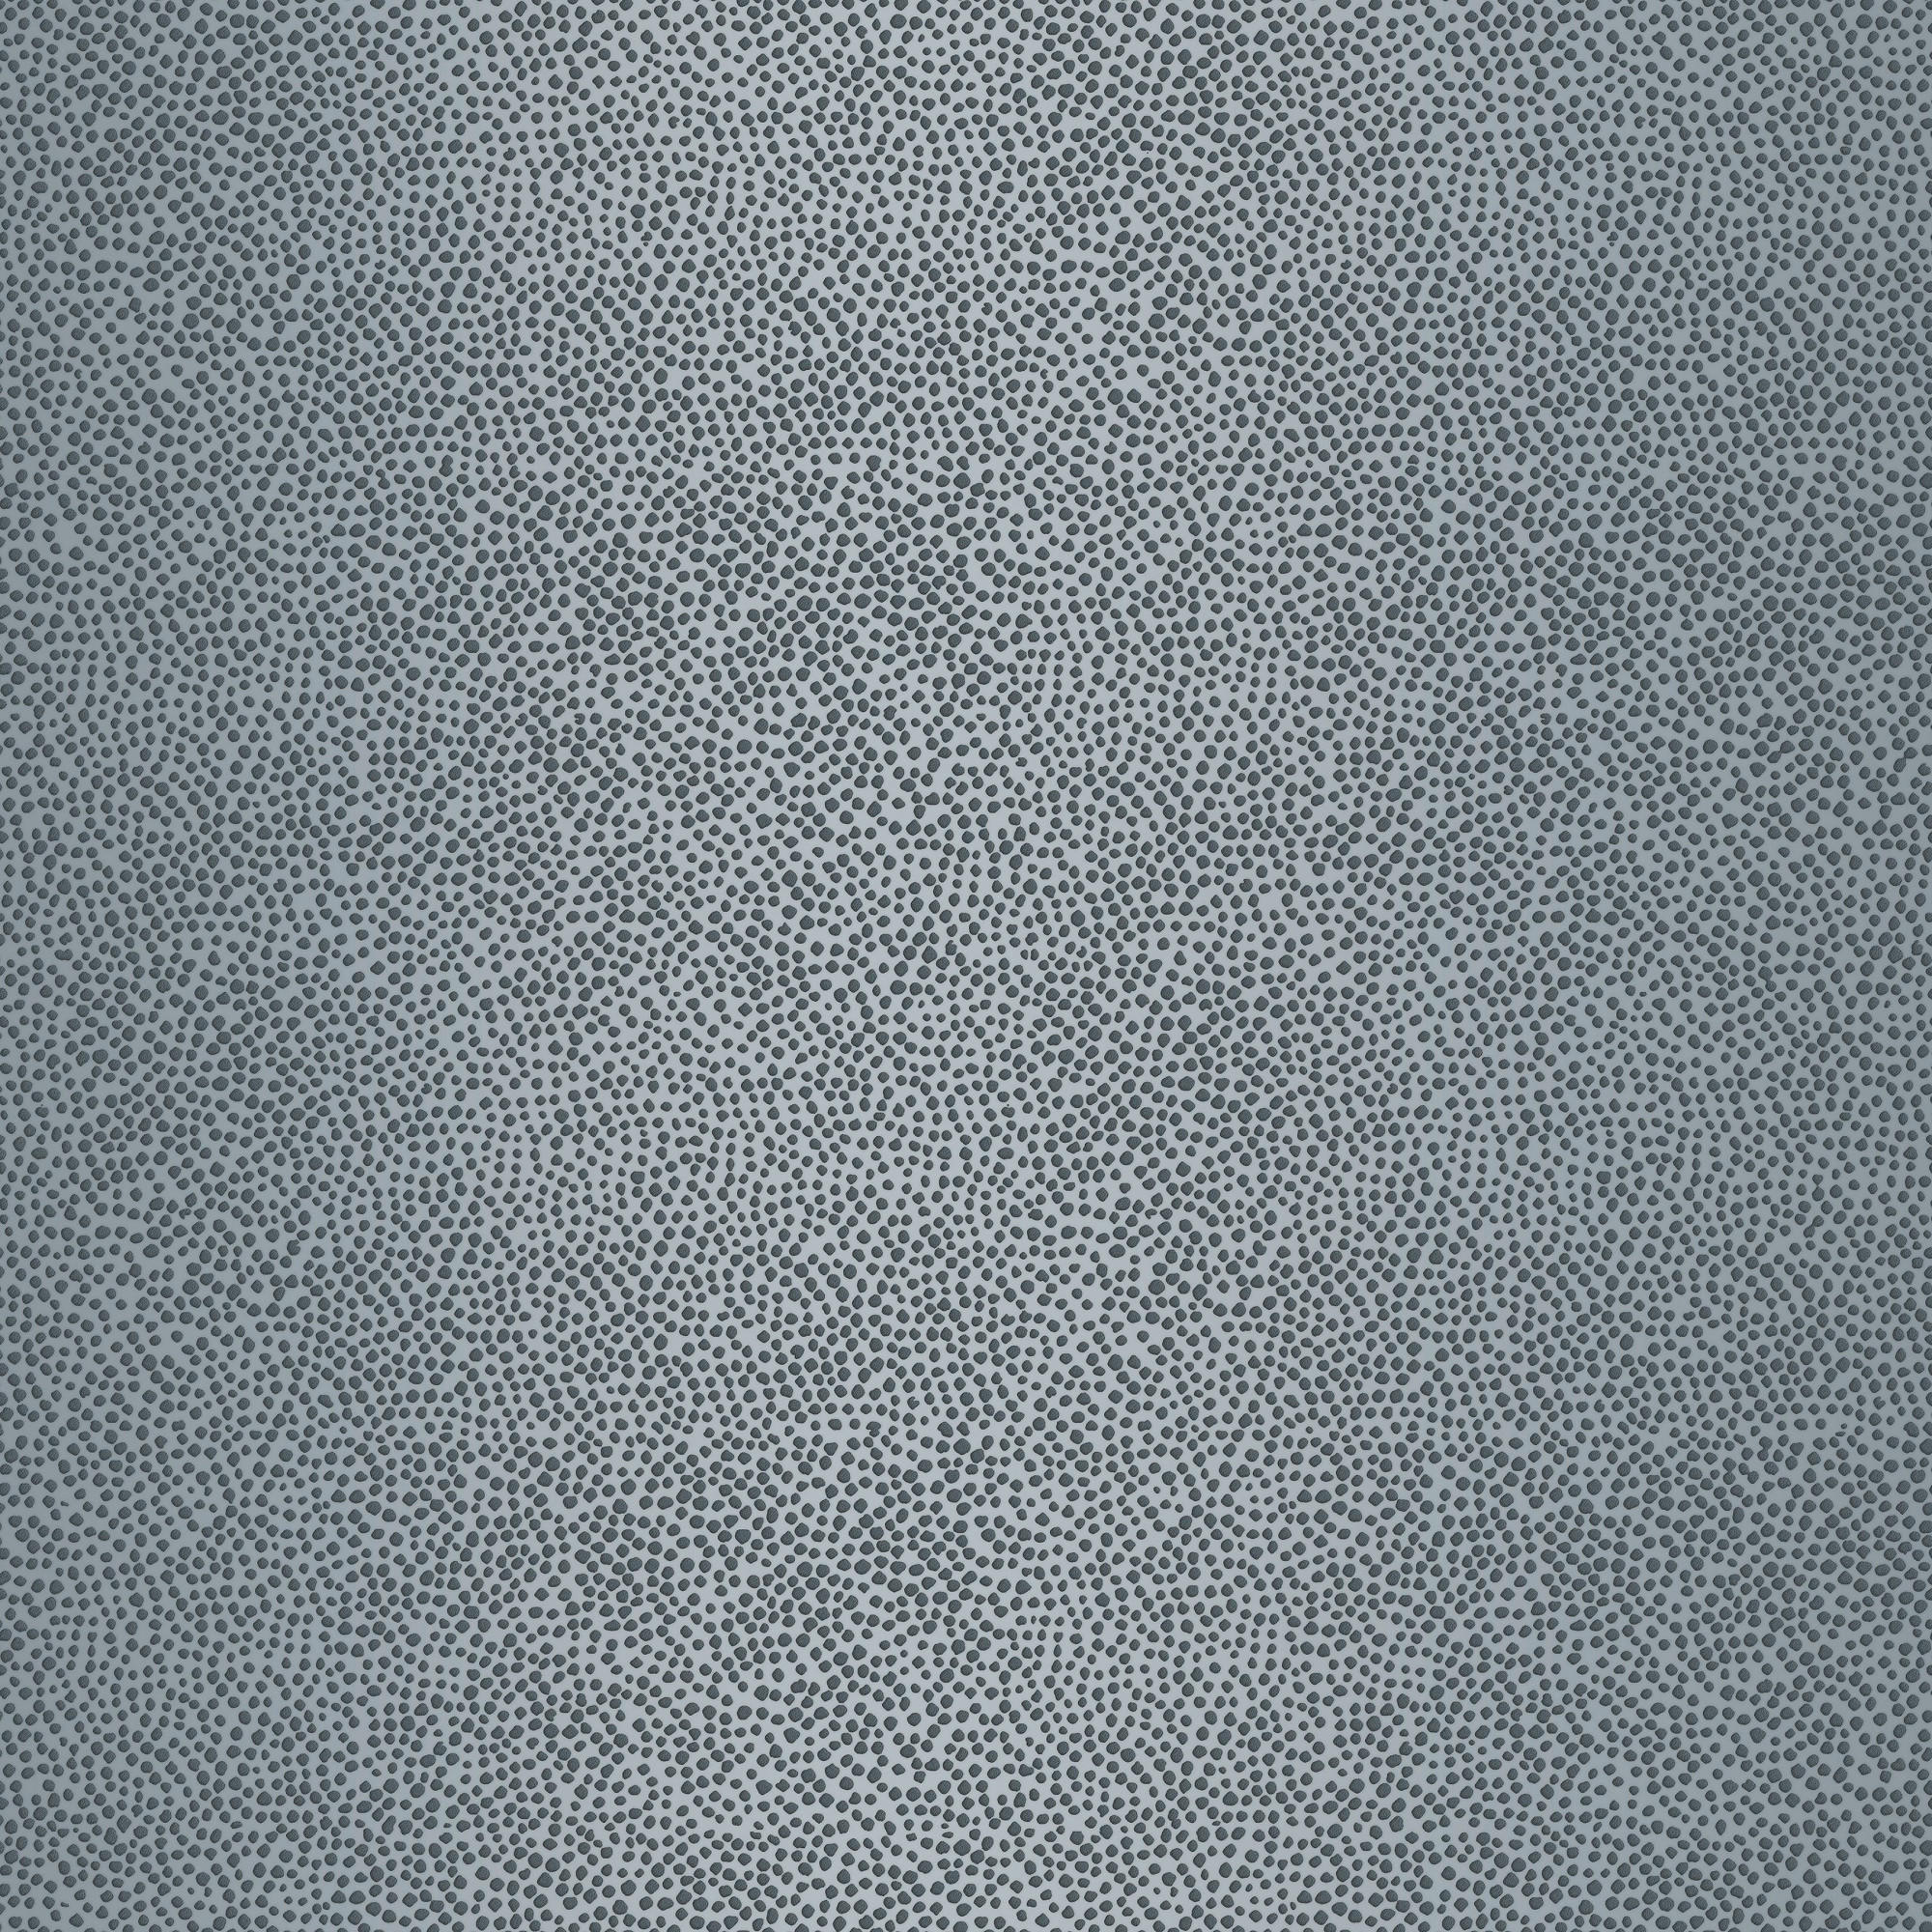 VLIESTAPETE  - Grau, Basics, Papier/Kunststoff (53/1000cm)